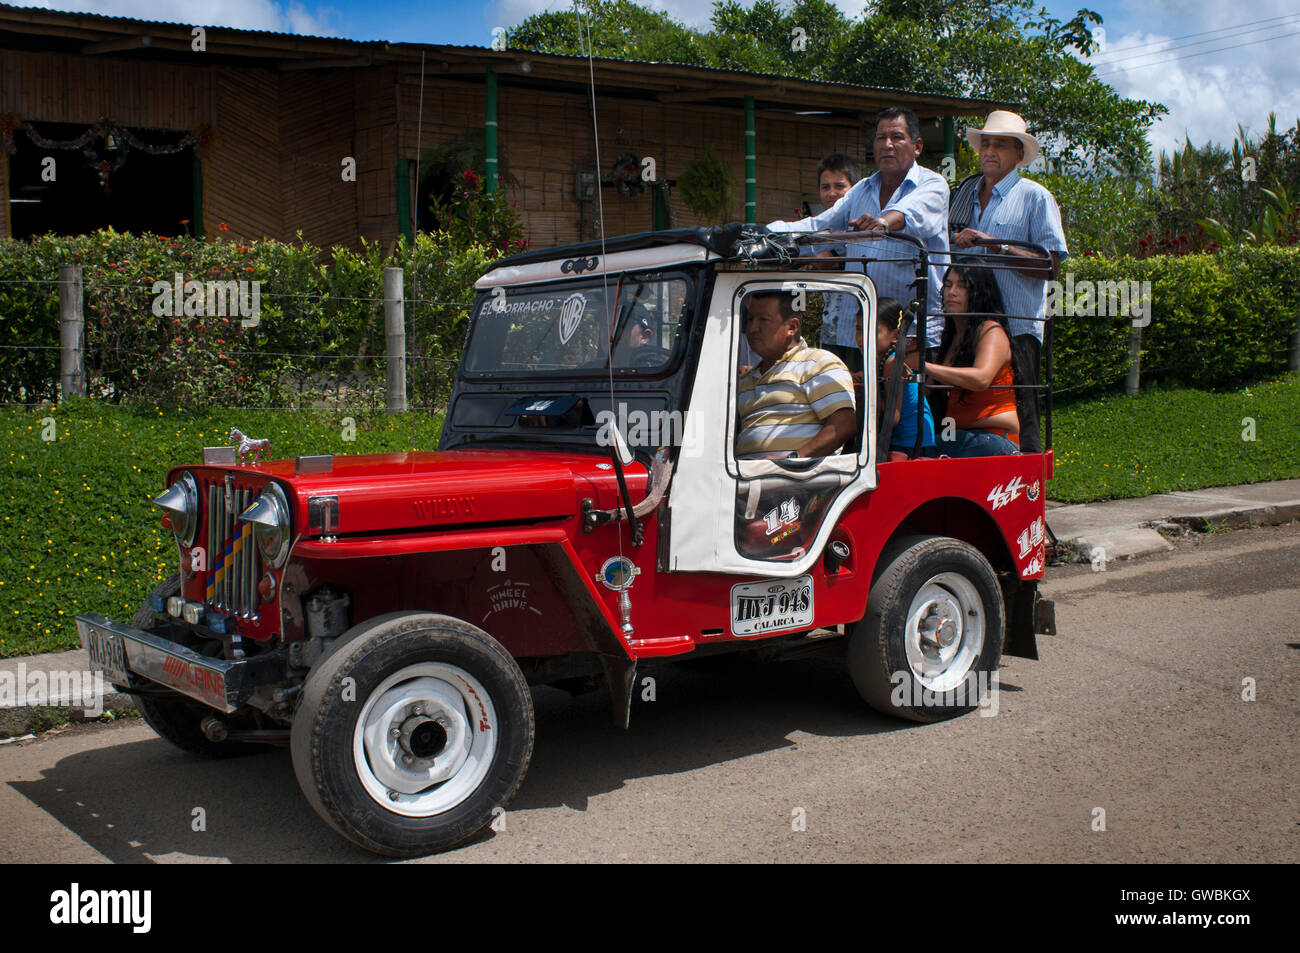 Willys jeep es típica de la zona. Salento, Filandia, y el Parque Nacional  Valle de Cocora, Colombia. Eje de la caficultura colombiana. El eje cafetero  colombiano, también conocido como el Triángulo del